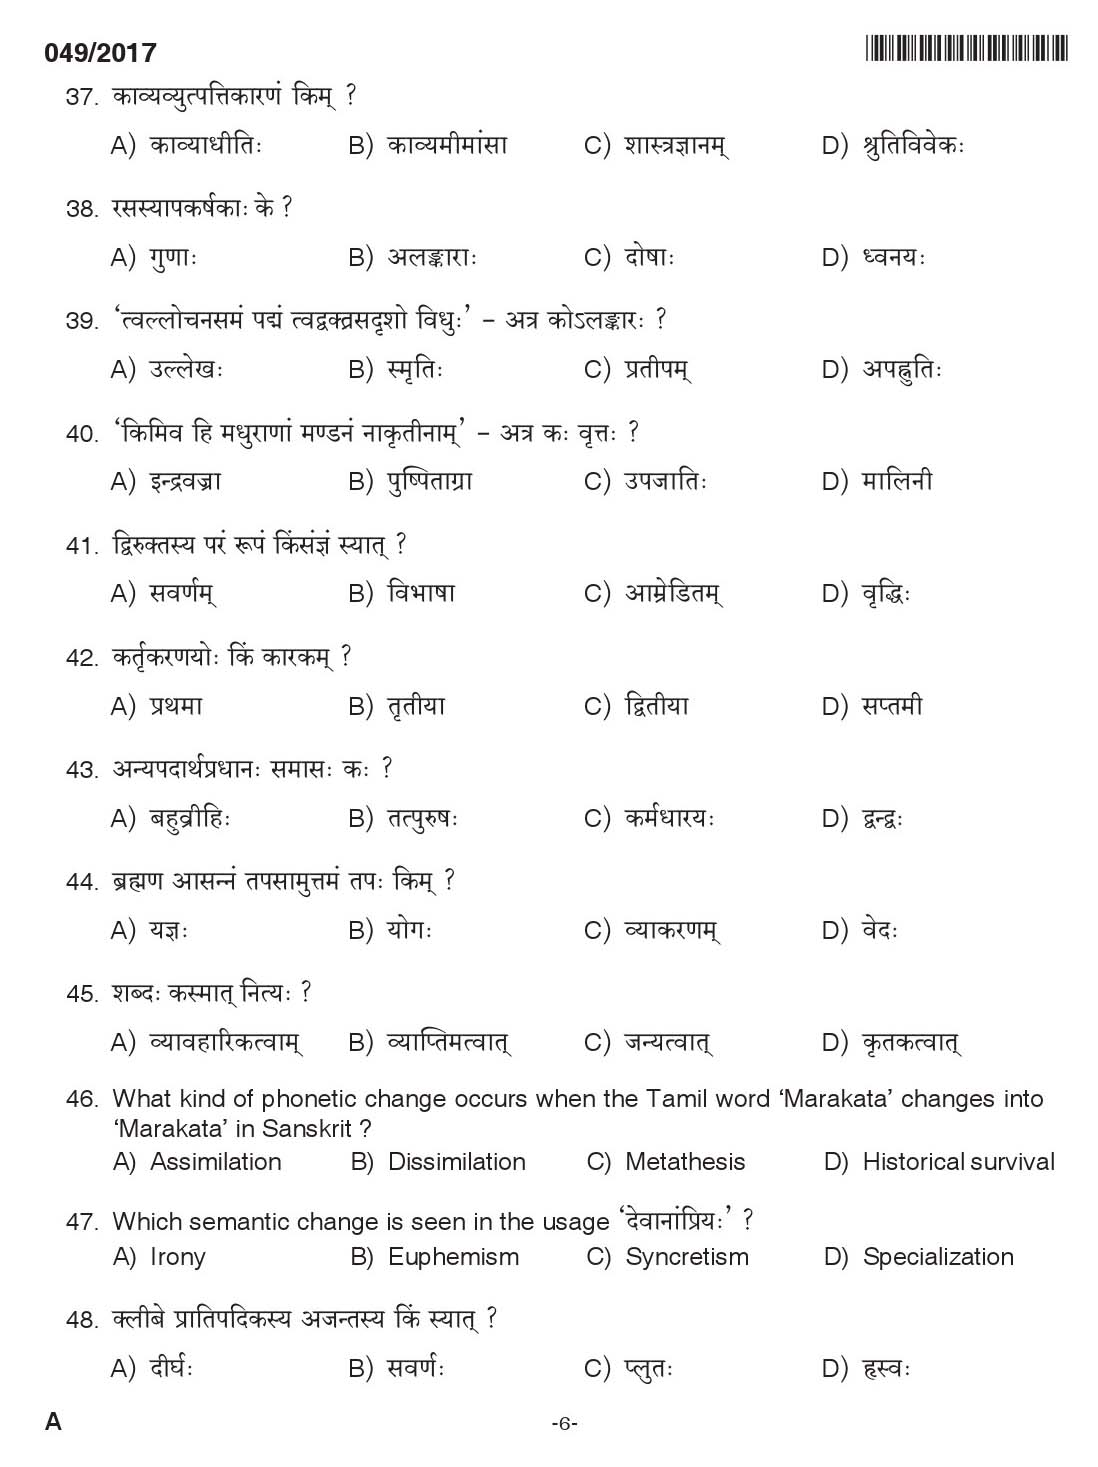 KPSC Lecturer In Sanskrit Exam 2017 Code 0492017 5